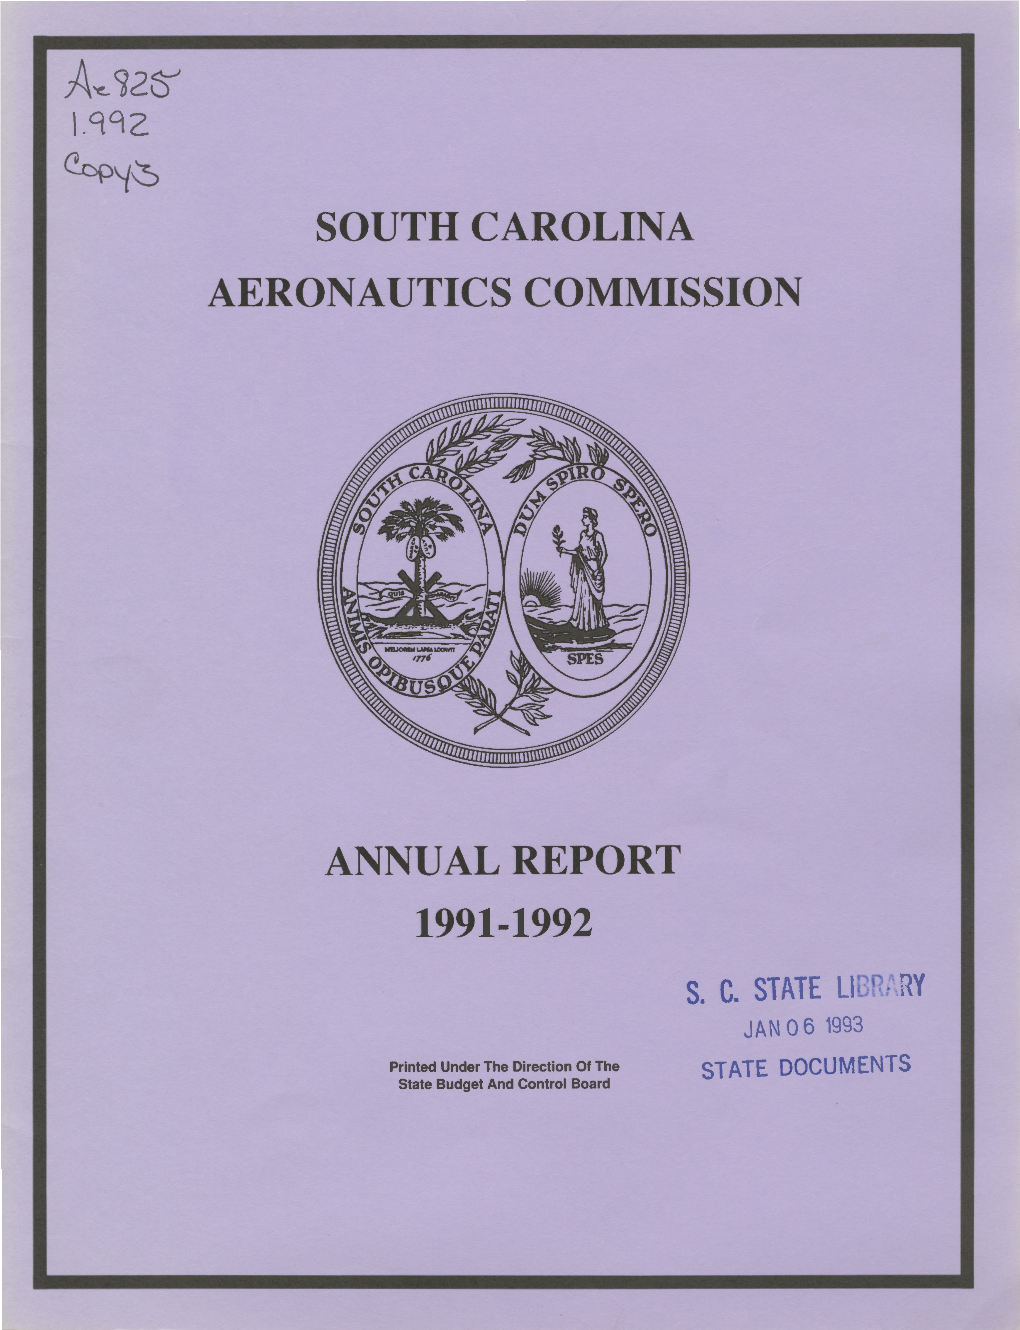 South Carolina Aeronautics Commission Annual Report